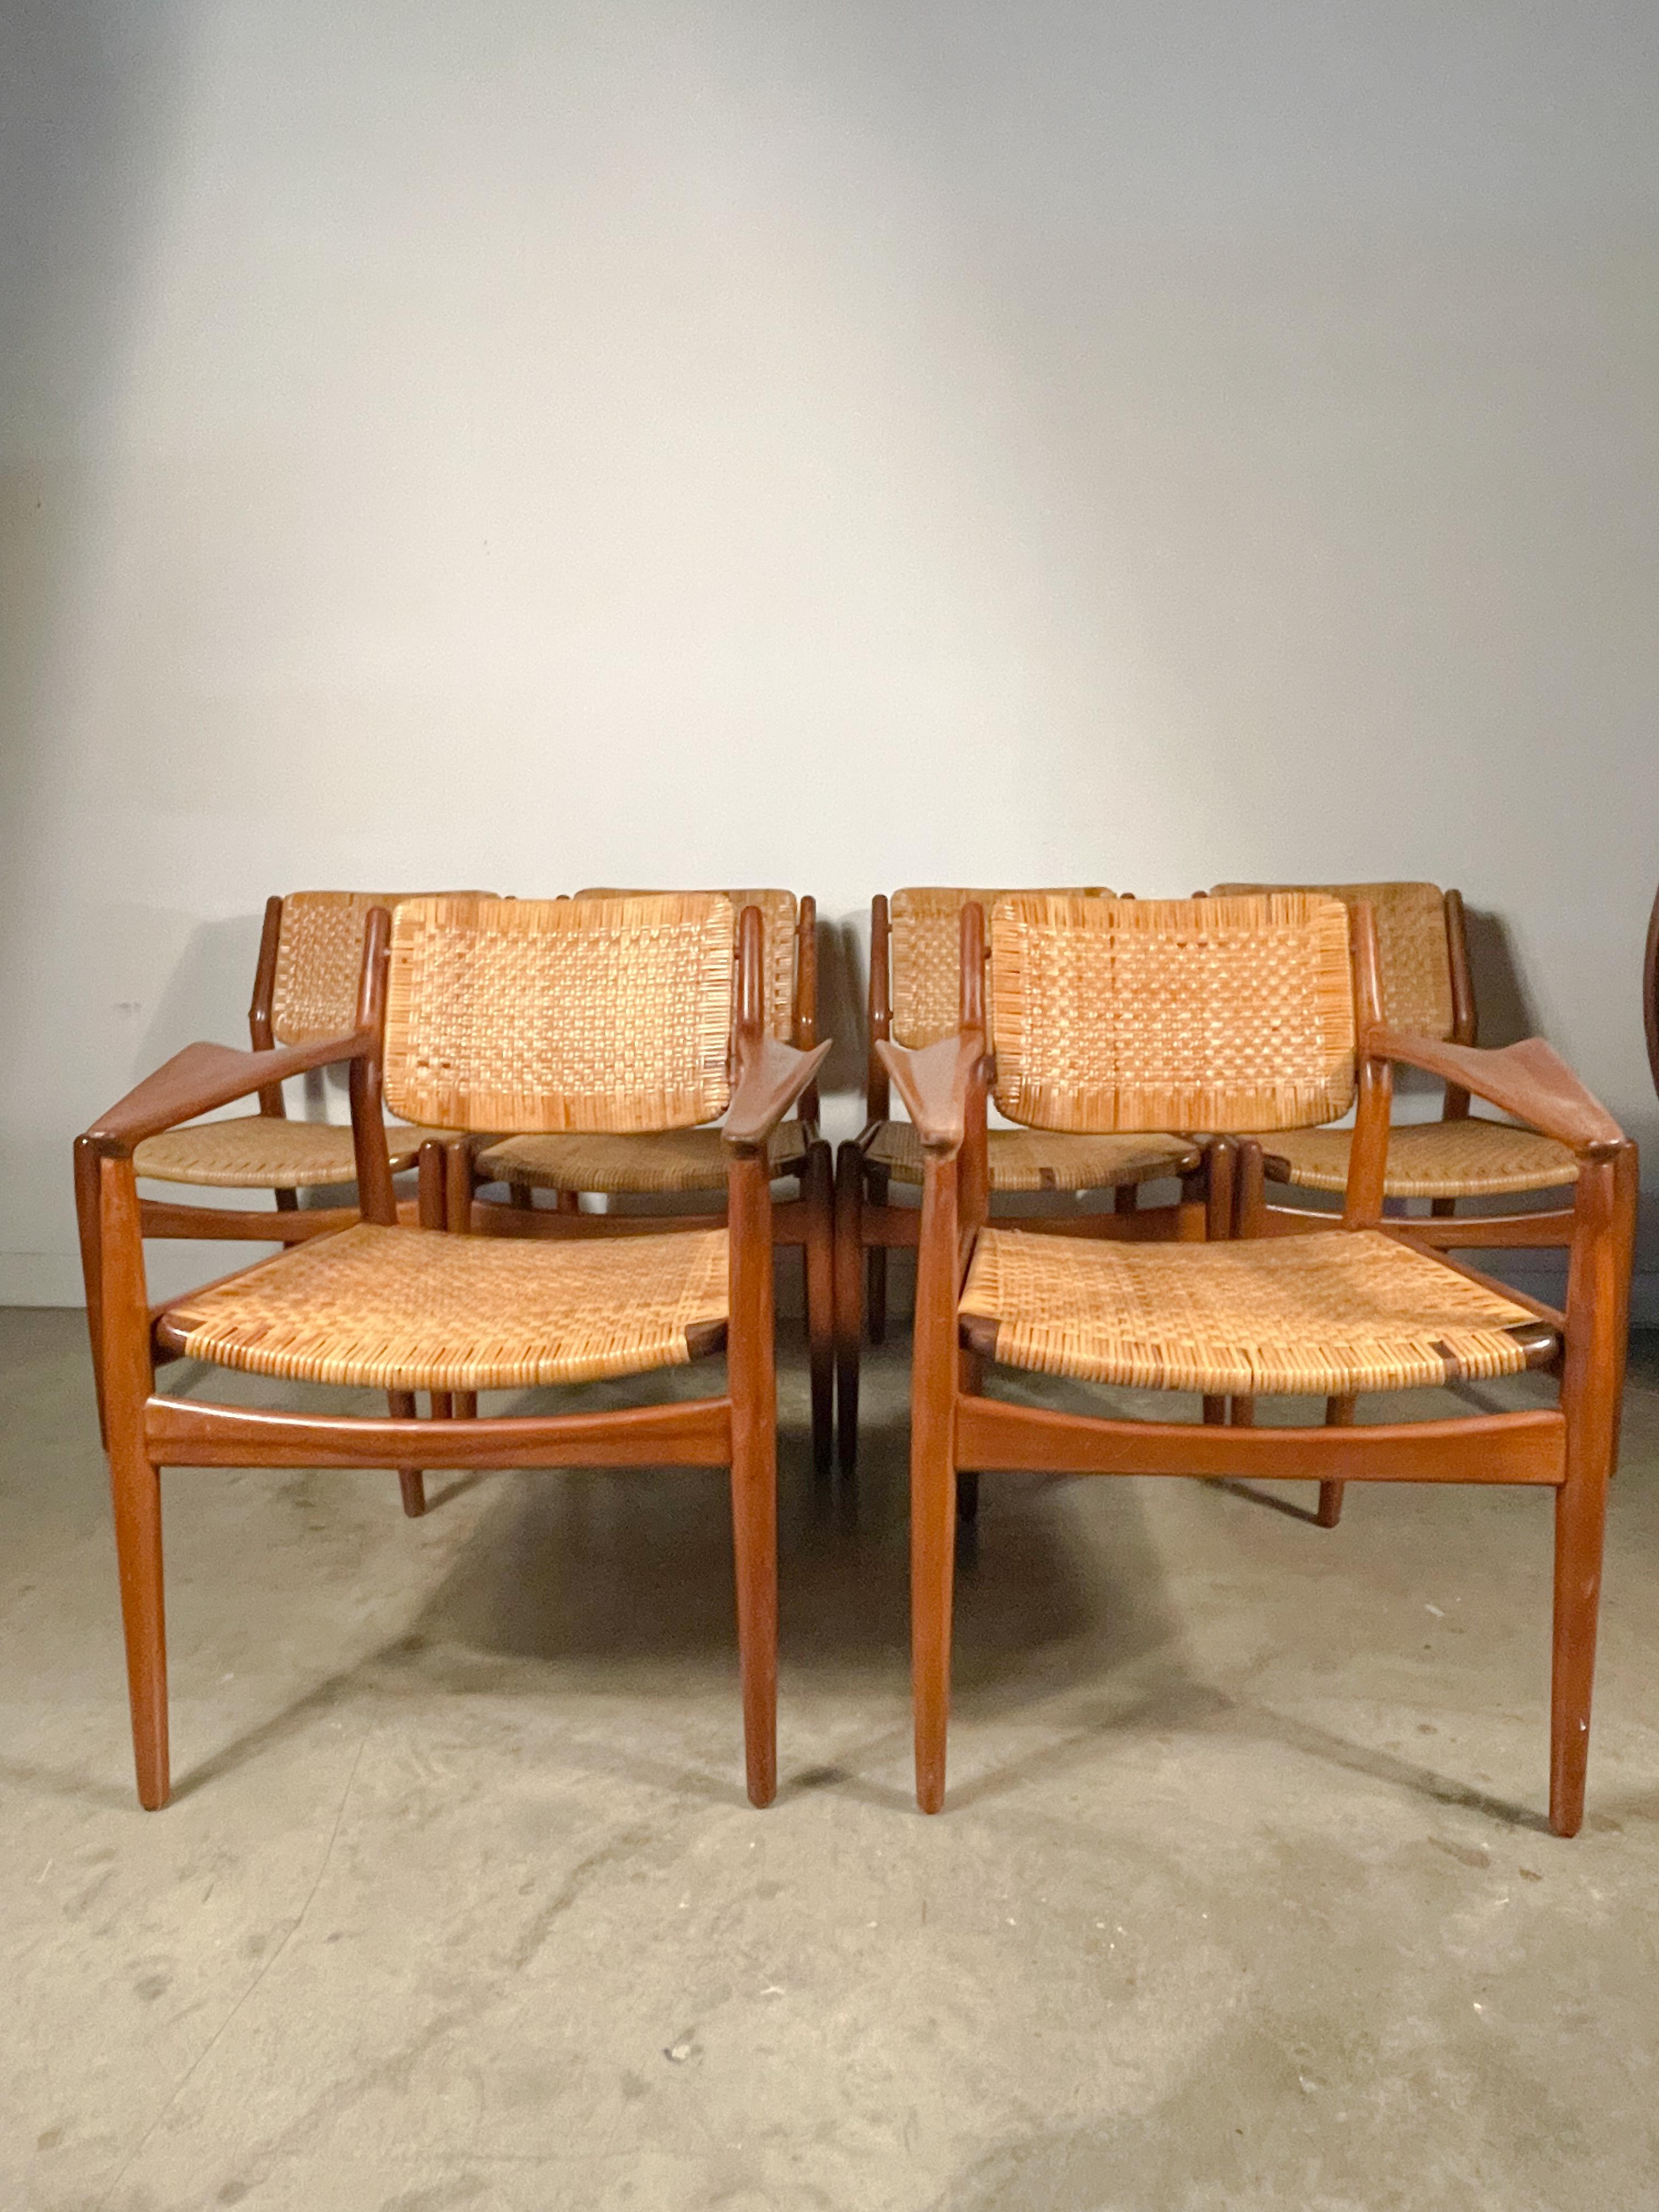 Rare ensemble de chaises en teck avec assise et dossier en rotin tressé, dessinées par Arne Vodder et fabriquées par Sibast au Danemark dans les années 1950.
 
Cet ensemble comprend quatre chaises d'appoint et deux fauteuils modèle 51a, ces